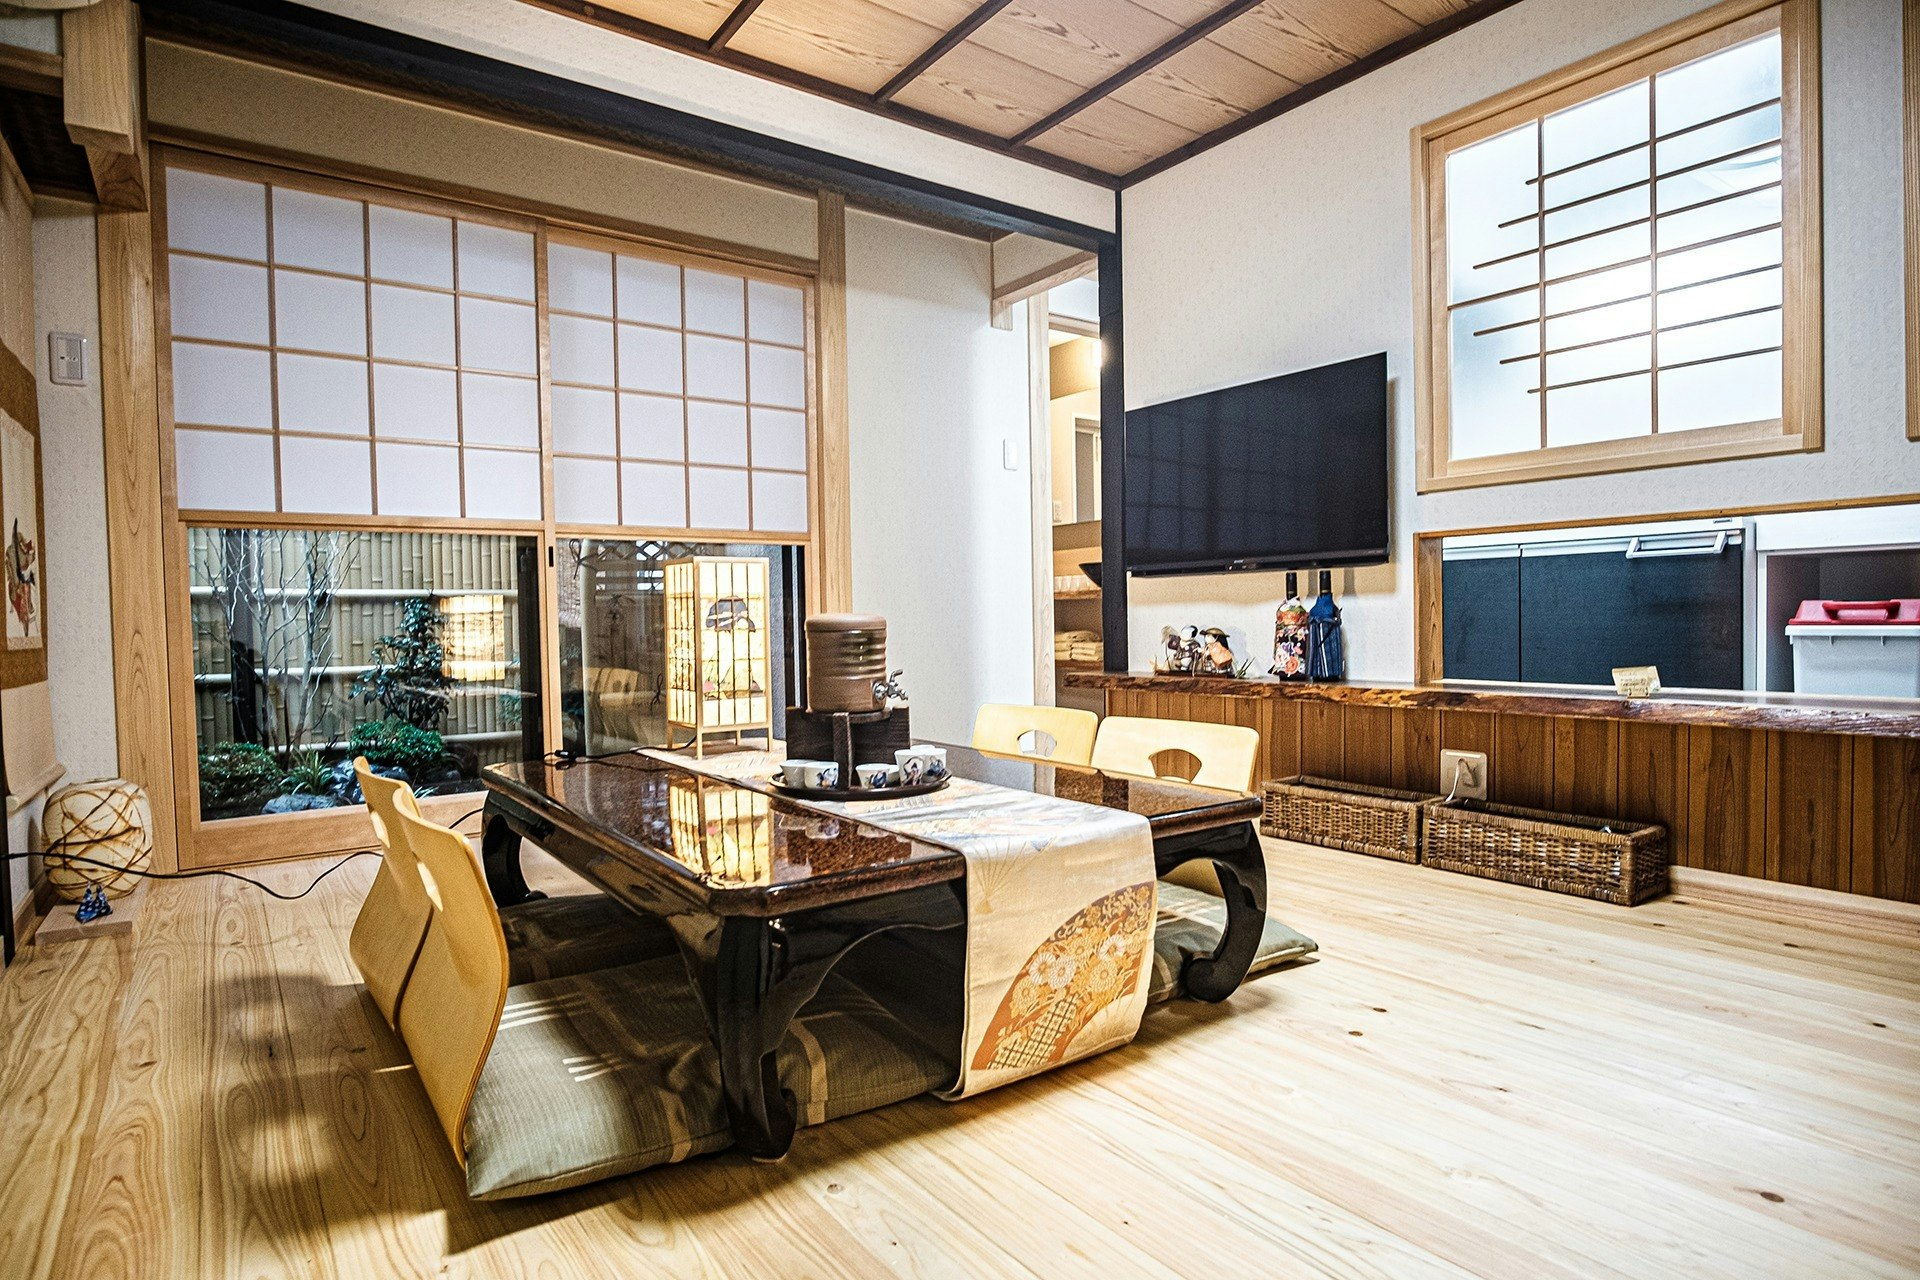 (京都魅力再発見旅プロジェクト参加)千代乃家は 明治40年の建物です 日本古建築文化京町屋風 